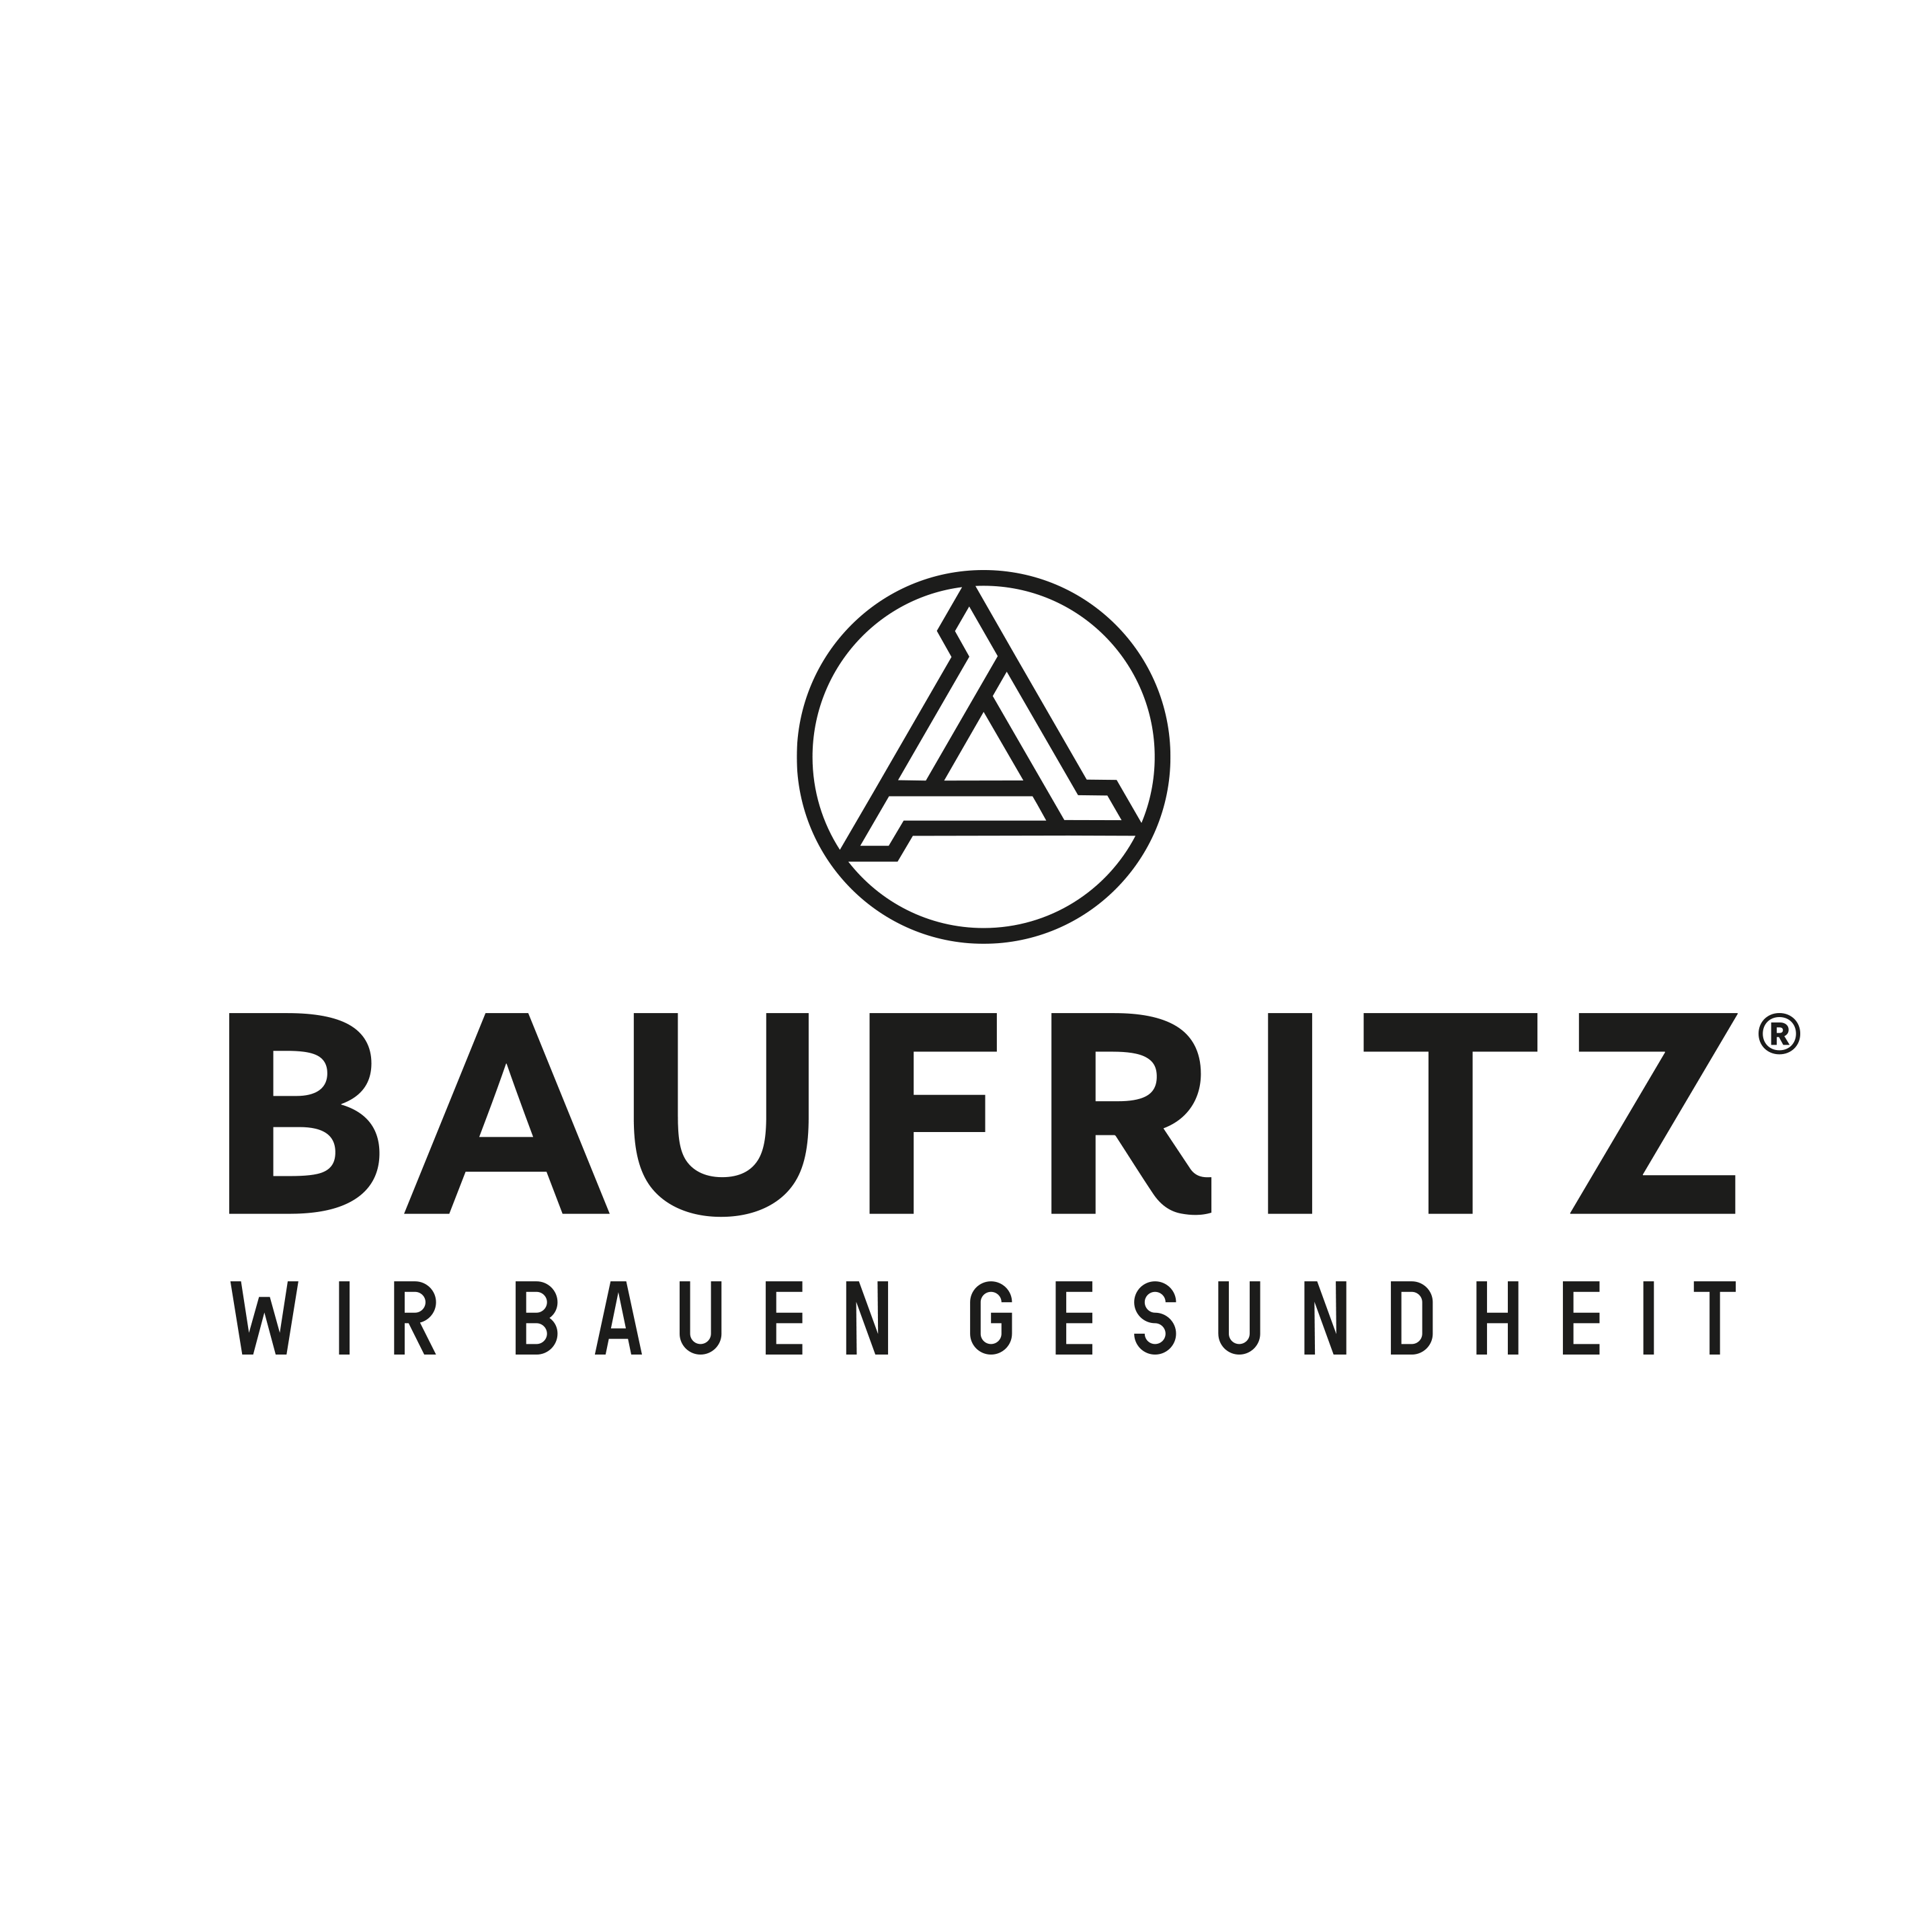 Bau-Fritz GmbH & Co. KG, seit 1896 Jobs